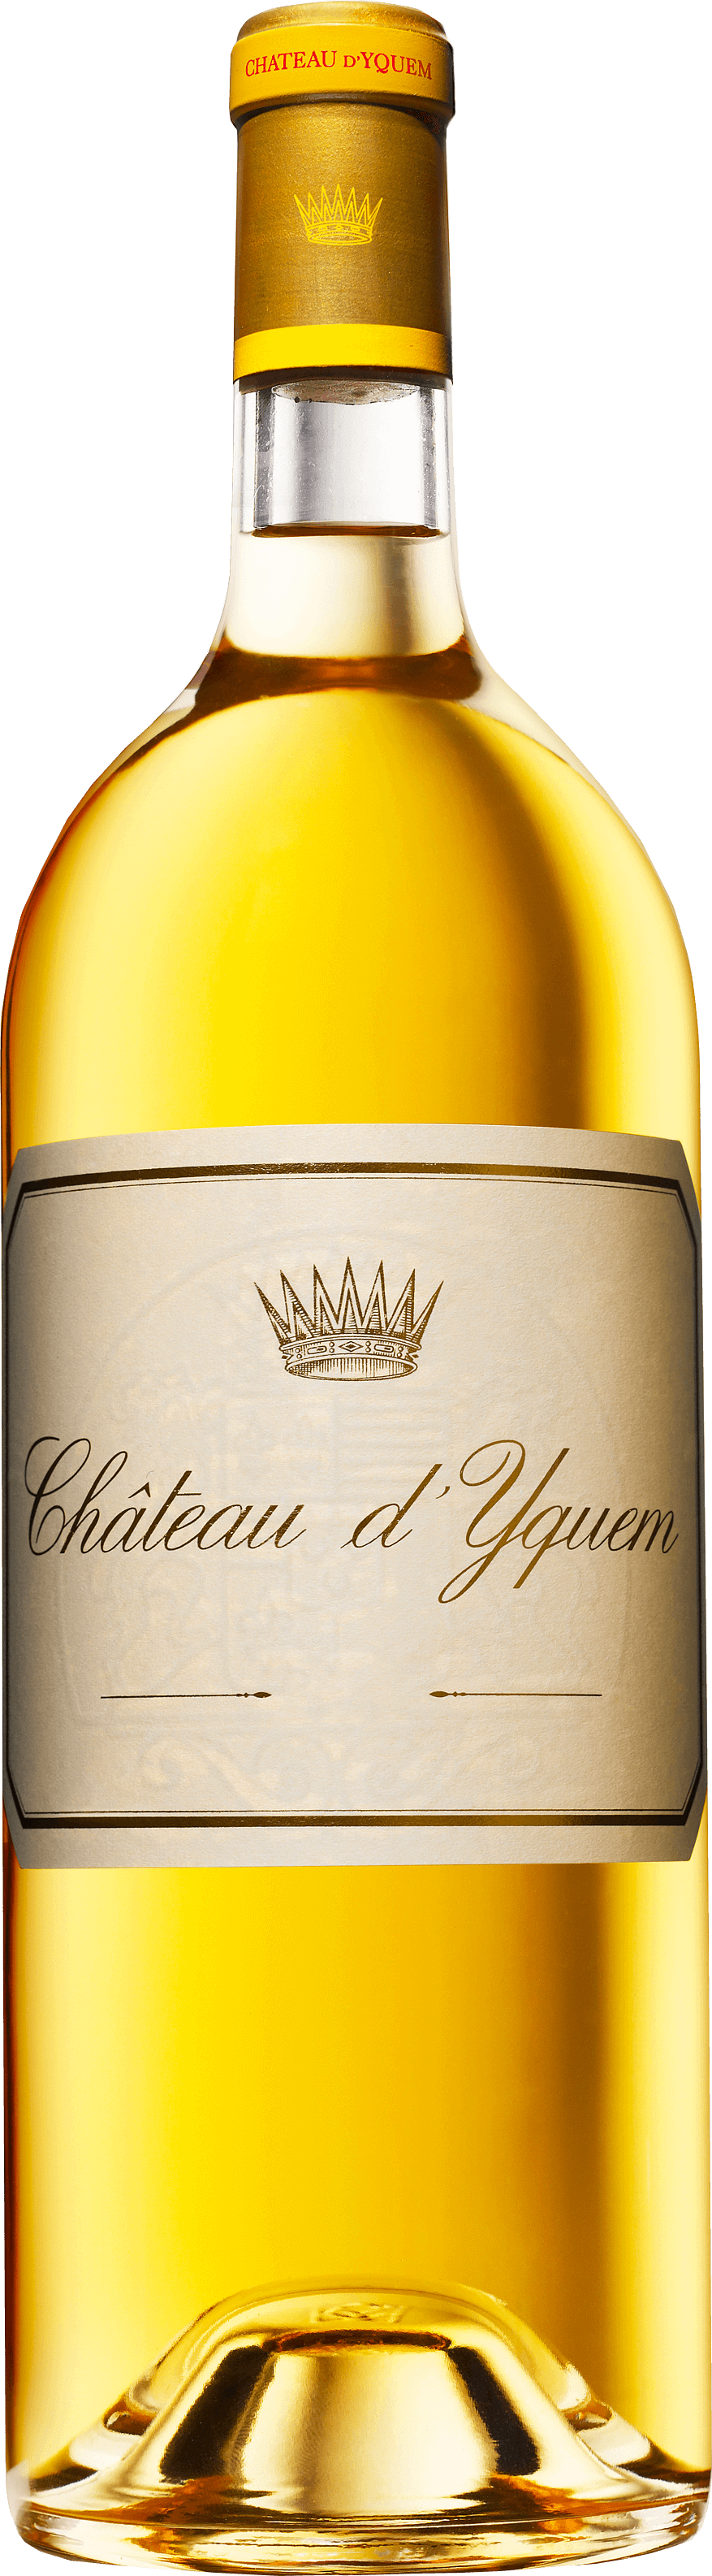 Yquem 2000 1er Cru Suprieur Sauternes, Bordeaux blanc